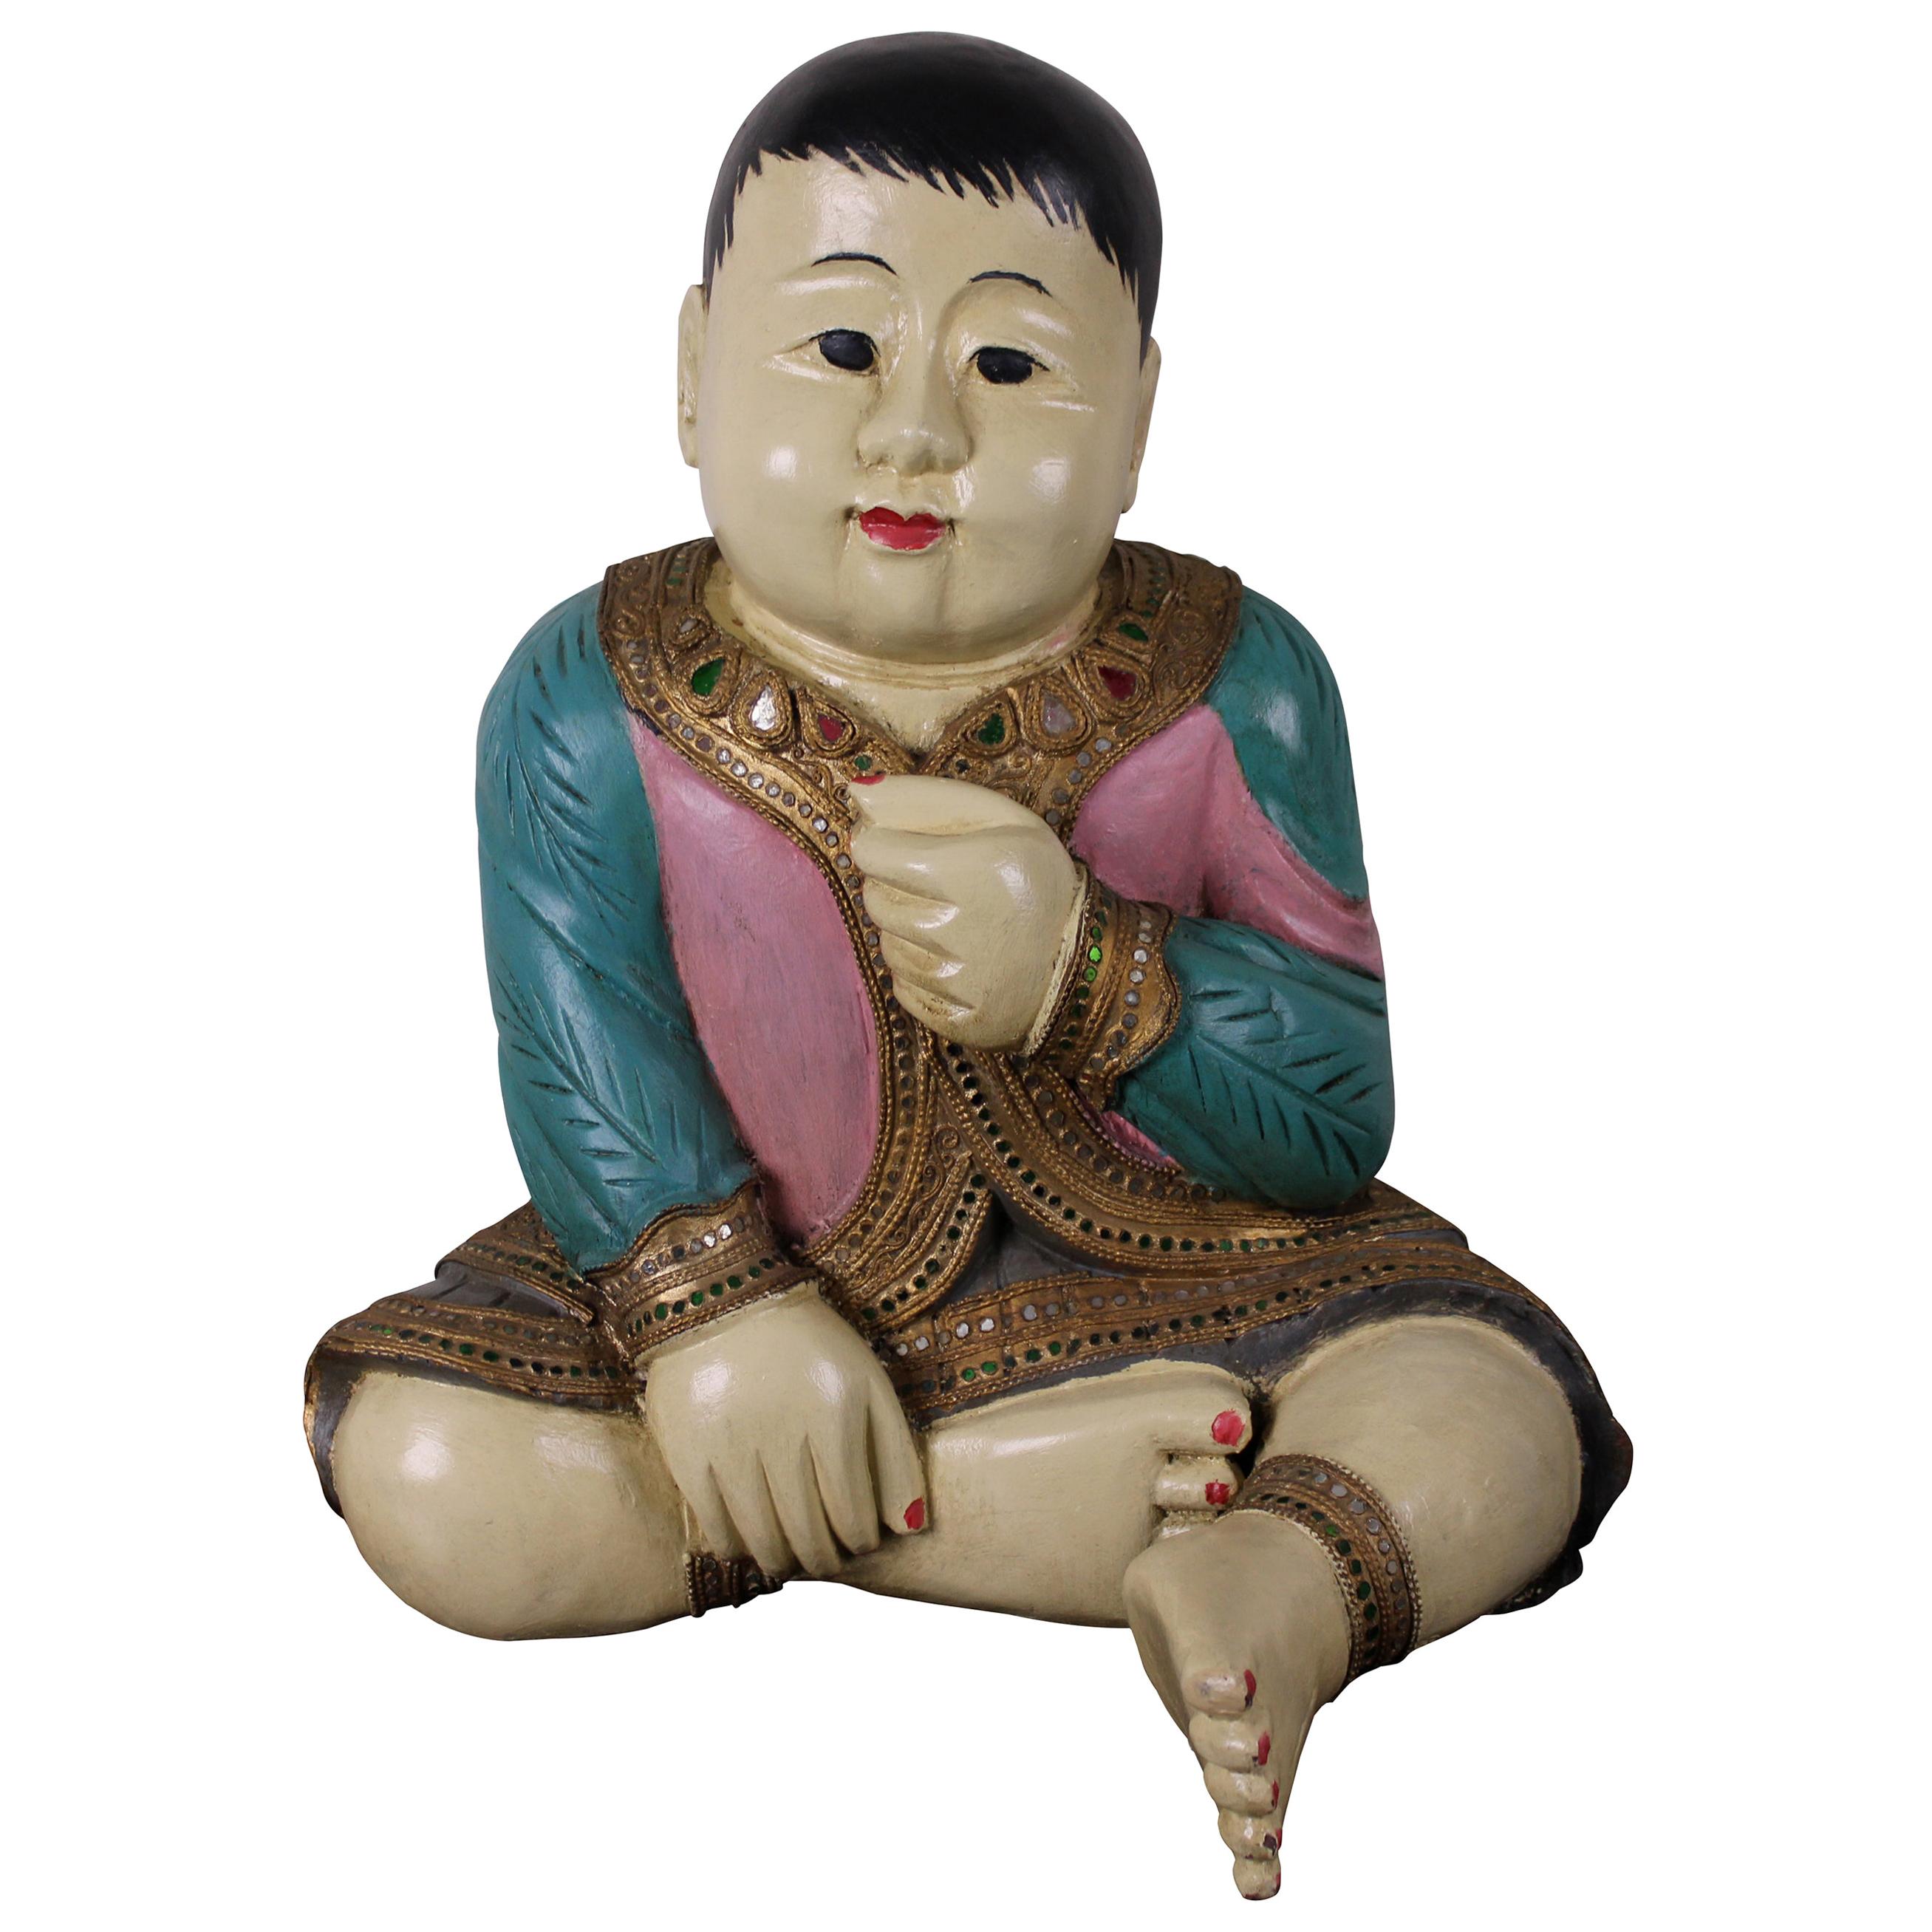 Sculpture de bébé asiatique assise sculptée en bois, laquée et ornée de bijoux Thaïlande